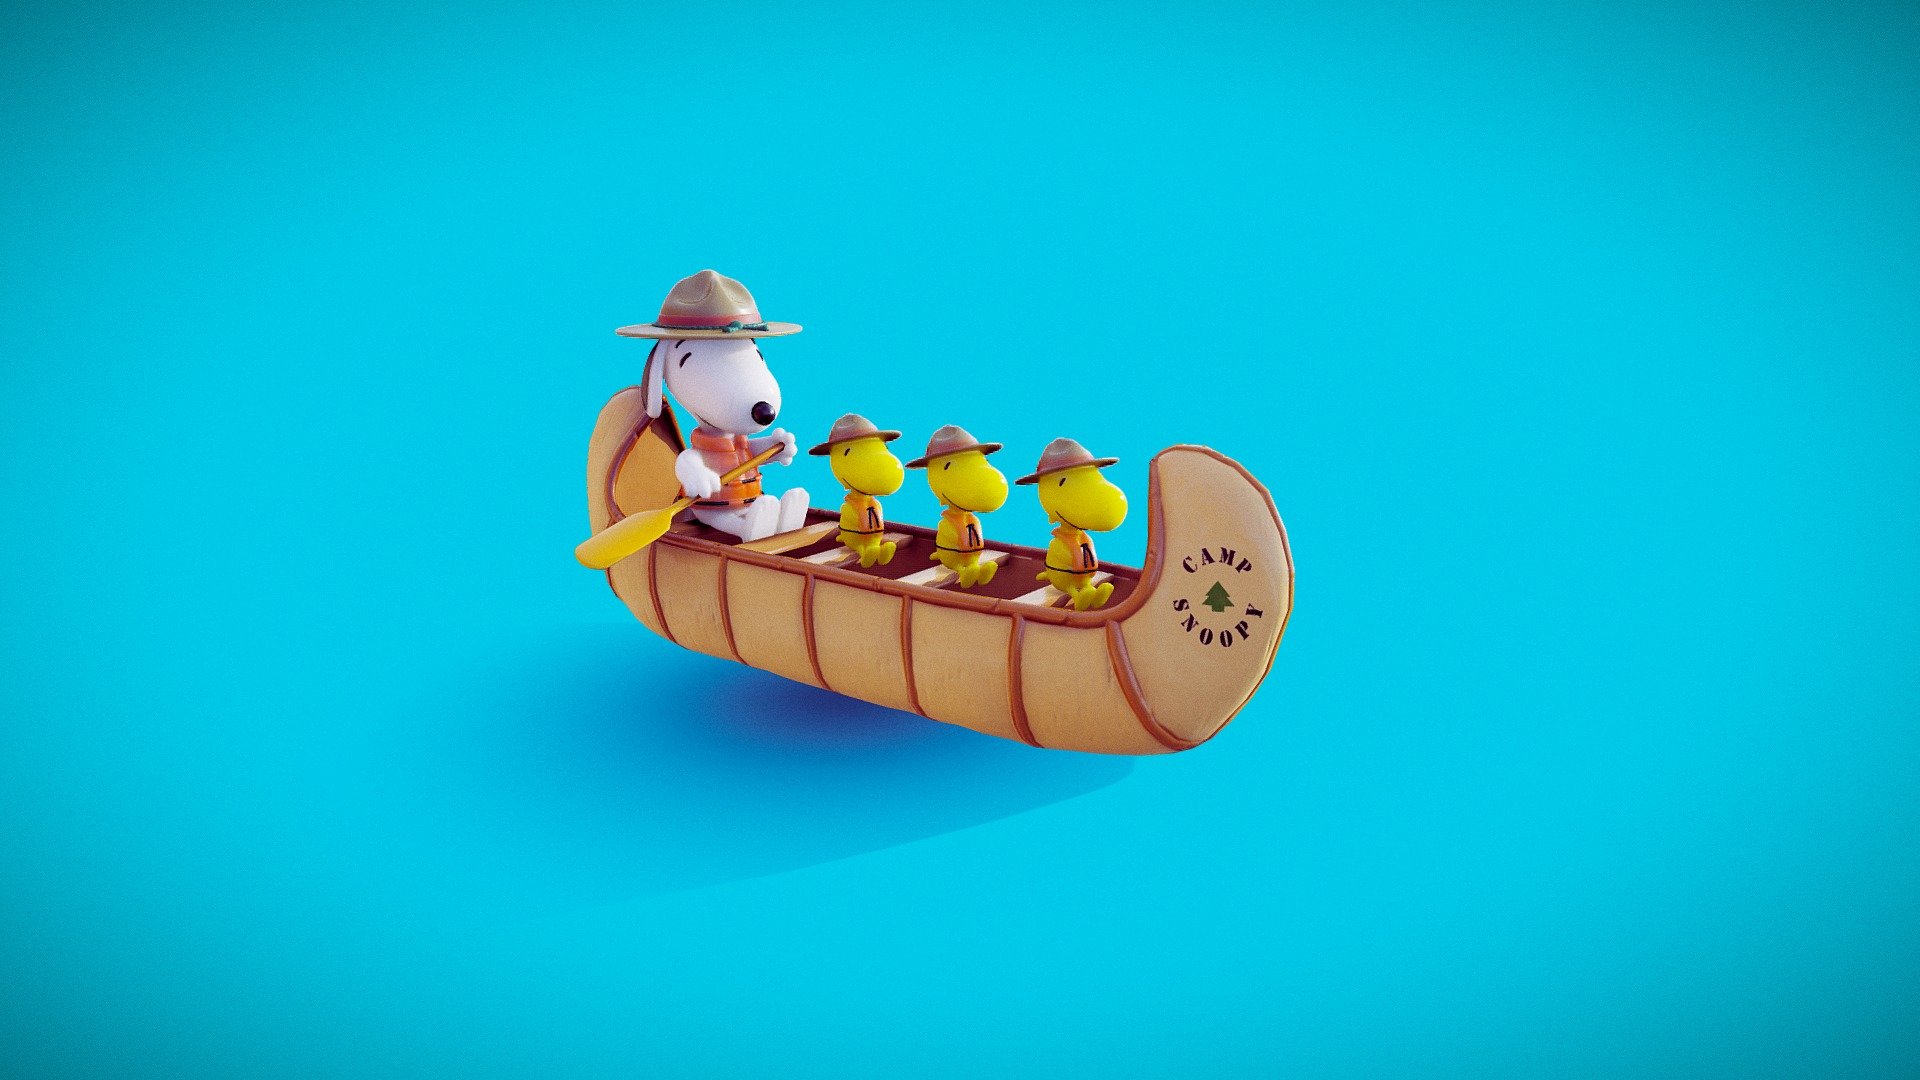 Snoopy Canoe - Snoopy Canoe - 3D model by msanjurj 3d model